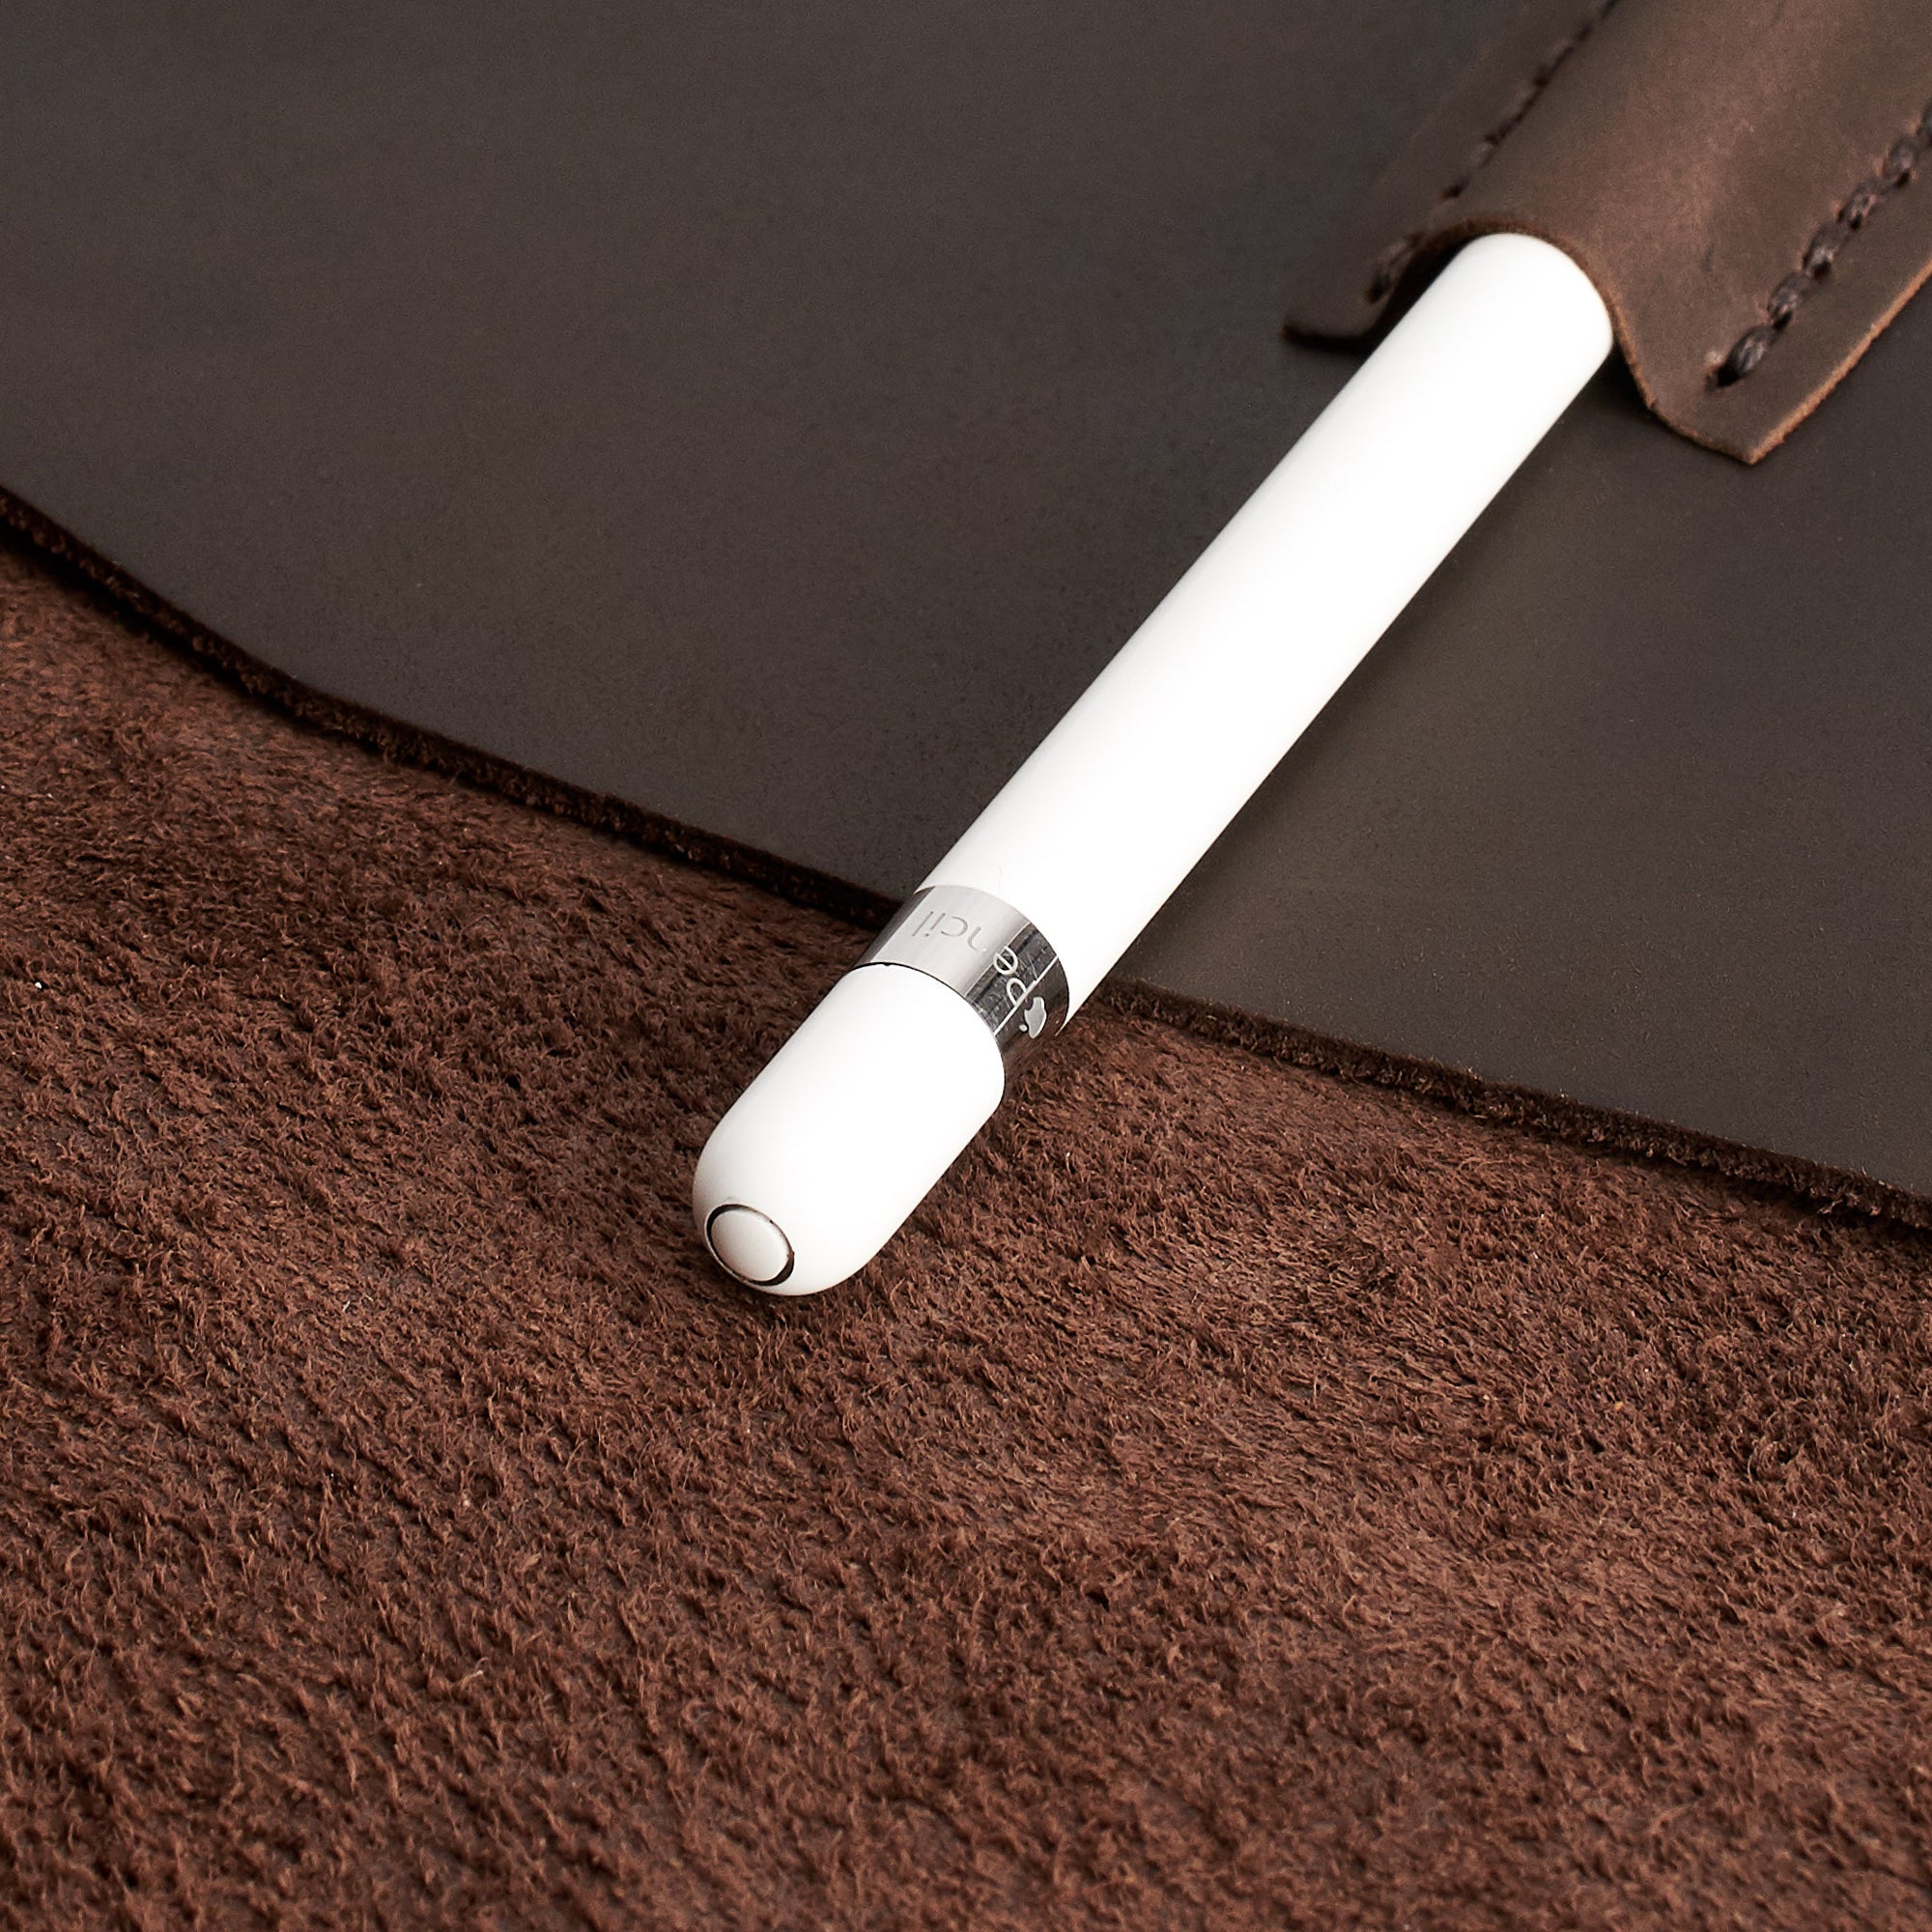 Apple Pencil Holder. iPad Sleeve. iPad Leather Case Brown With Apple Pencil Holder by Capra Leather